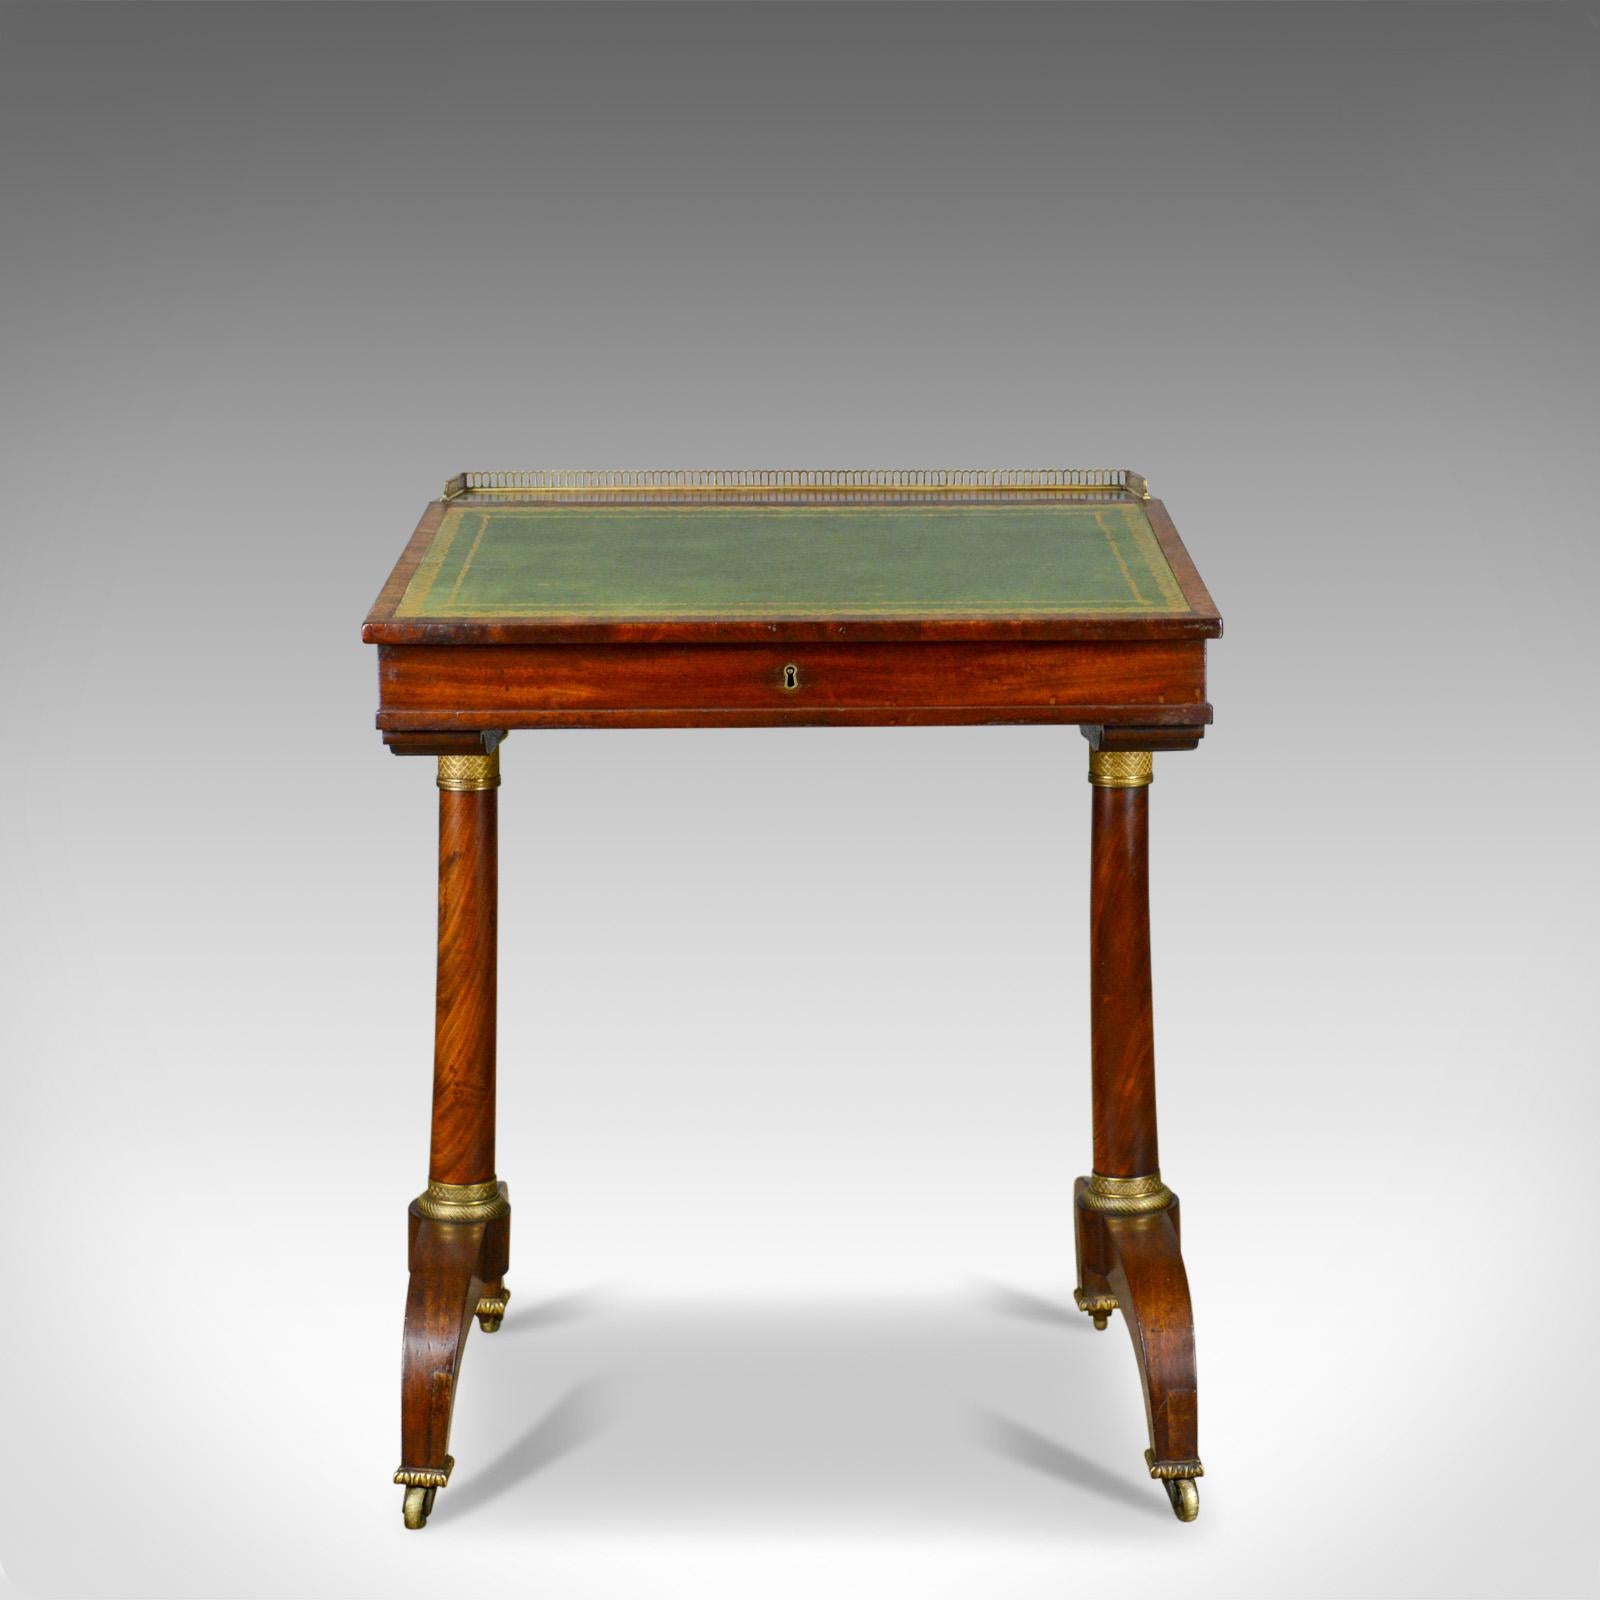 Dies ist ein antiker Schreibtisch, ein englischer, Regency, Mahagoni, offen Davenport aus dem frühen 19. Jahrhundert, um 1820.

Hochwertige Handwerkskunst aus ausgesuchtem Mahagoni
Gute Farbe mit wünschenswerter Alterspatina
Durchgängig